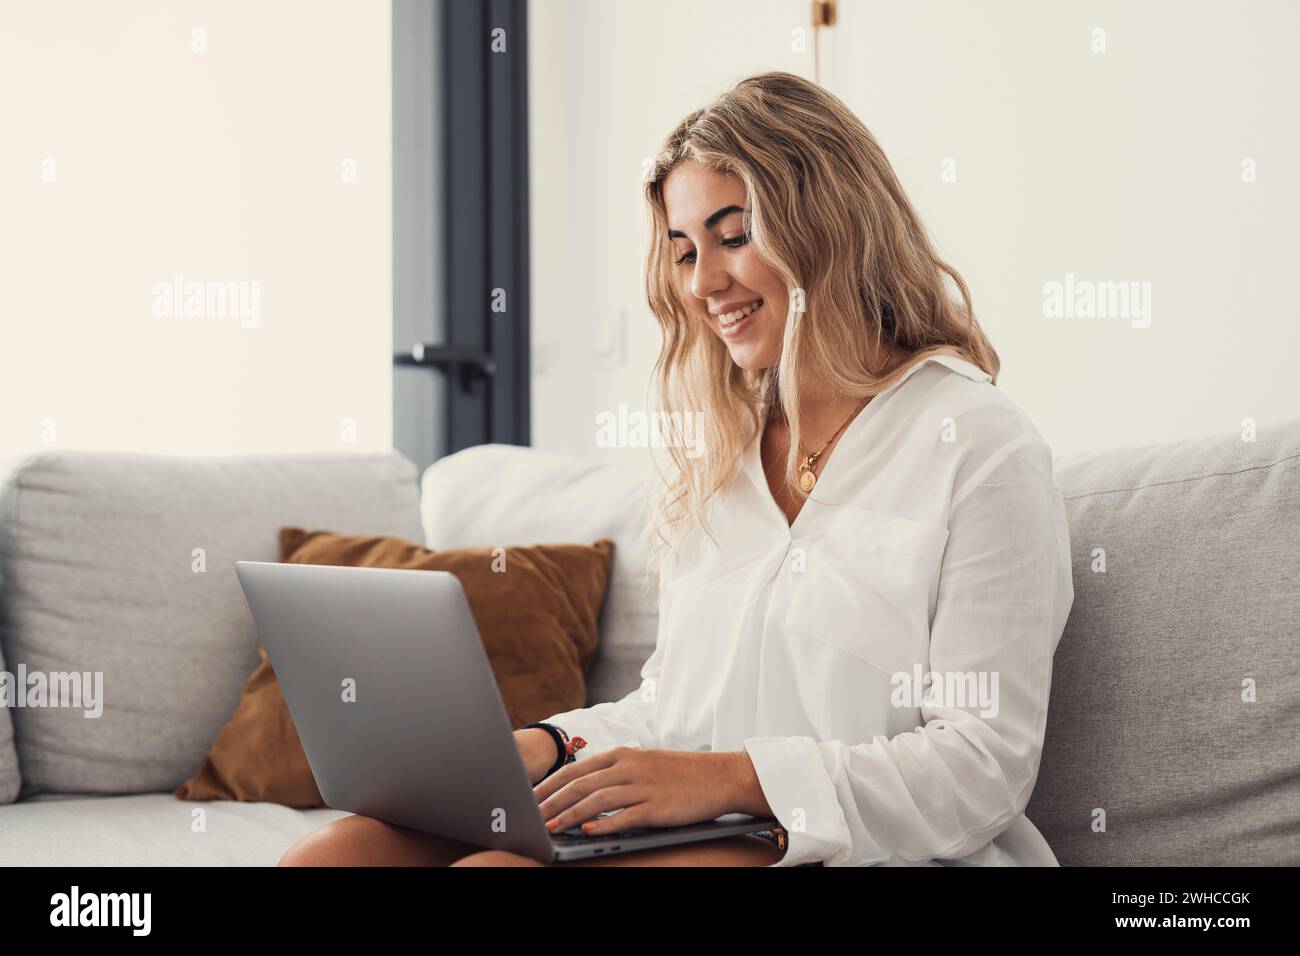 Porträt einer jungen attraktiven blonden Frau, die einen Laptop-pc auf der Couch benutzt und zu Hause im Internet surft. Working Online Concept Lifestyle Stockfoto